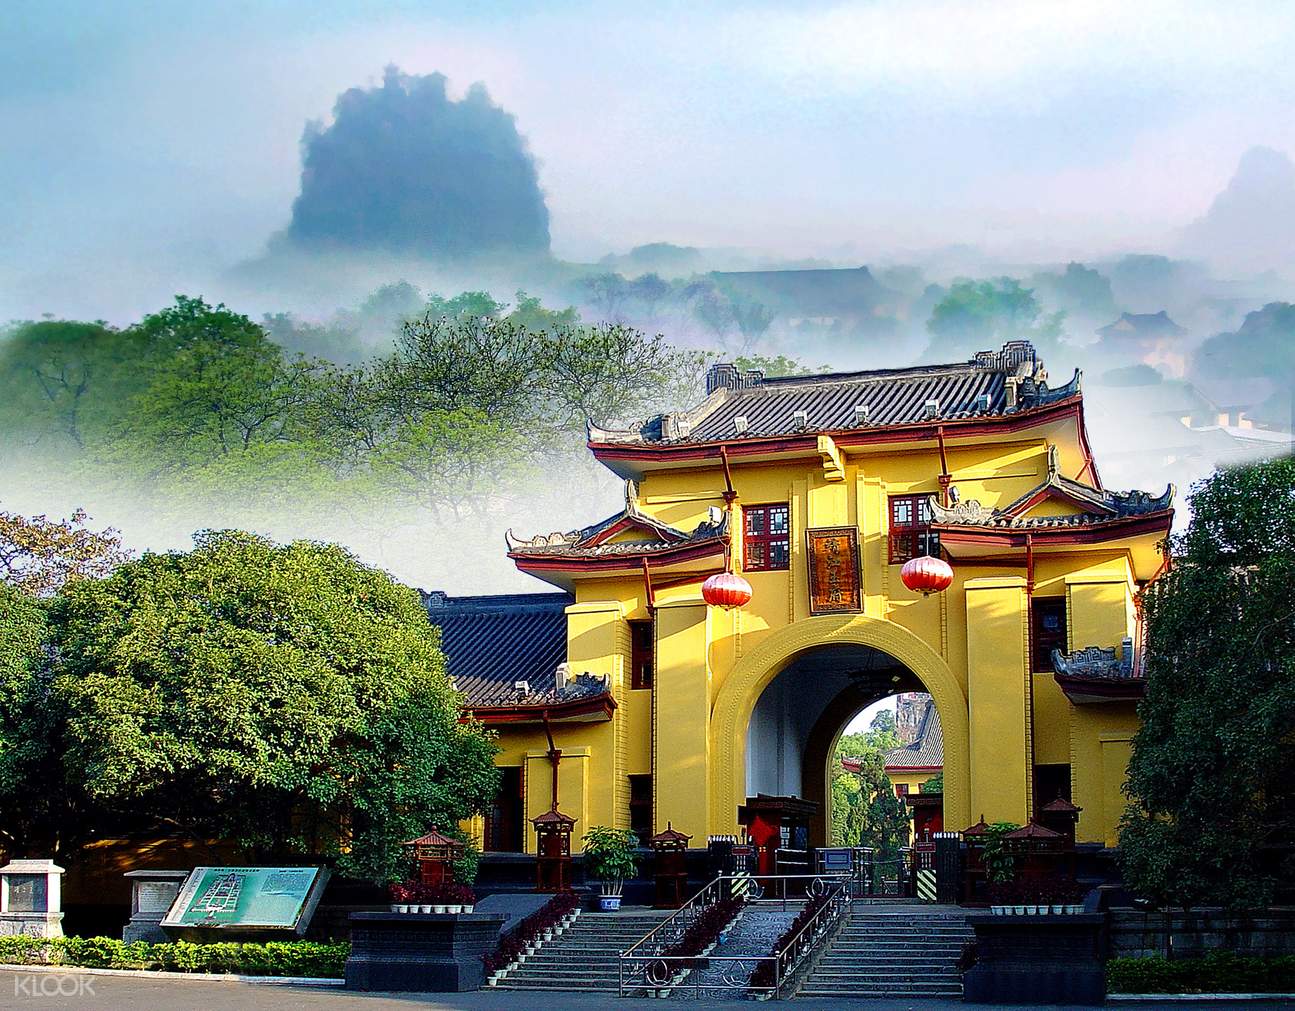 靖江王府是明朝开国皇帝朱元璋分封给其侄孙的府邸，修建于1372年